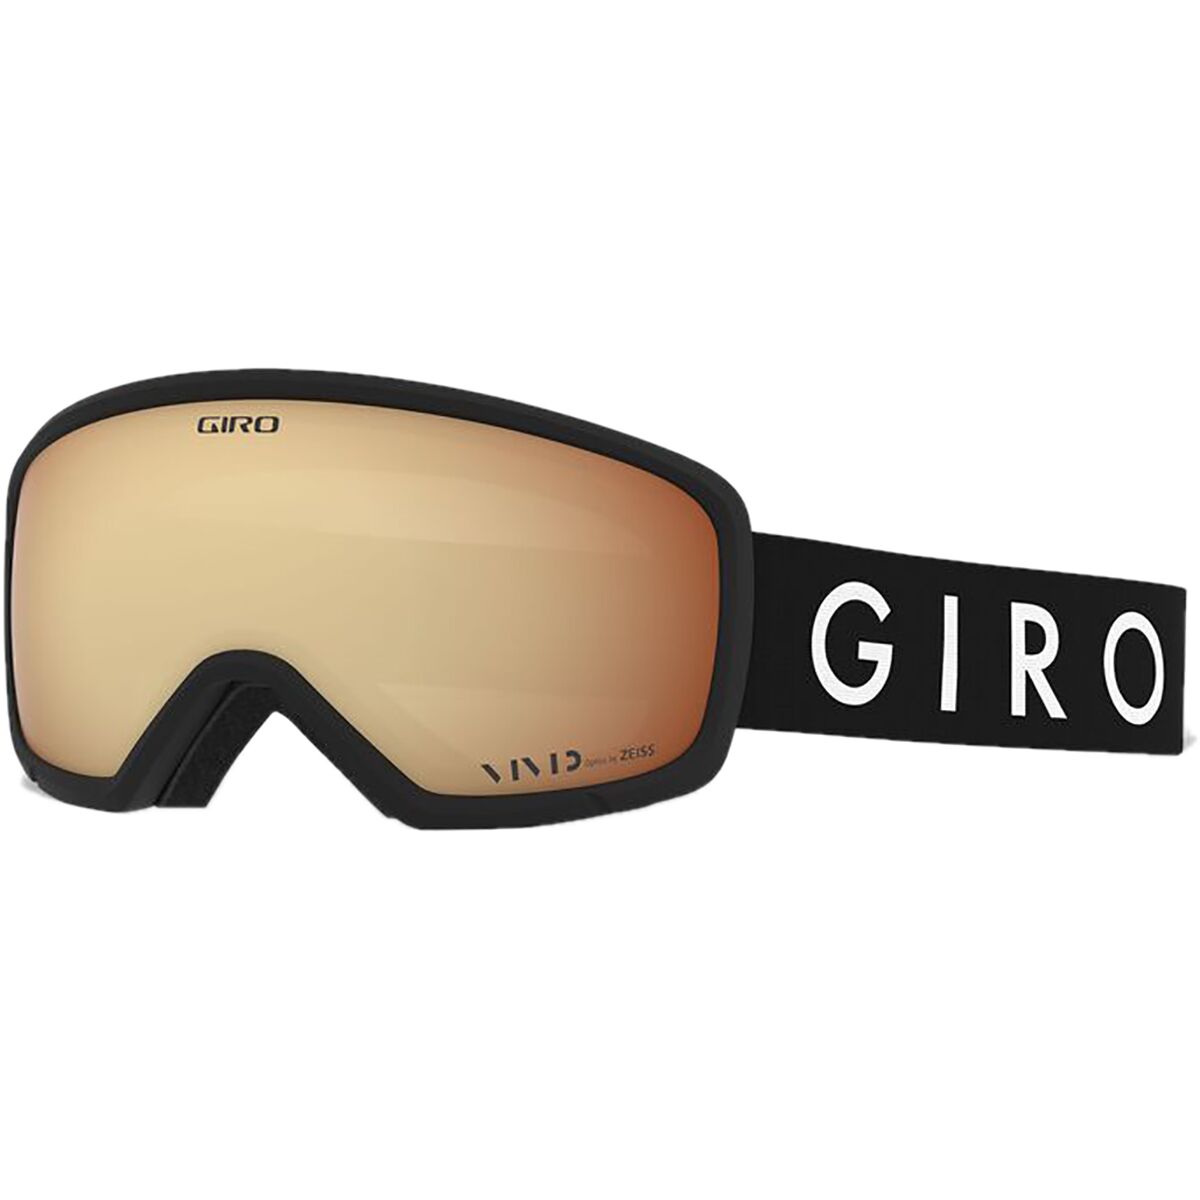 Giro Millie Goggles - Women's